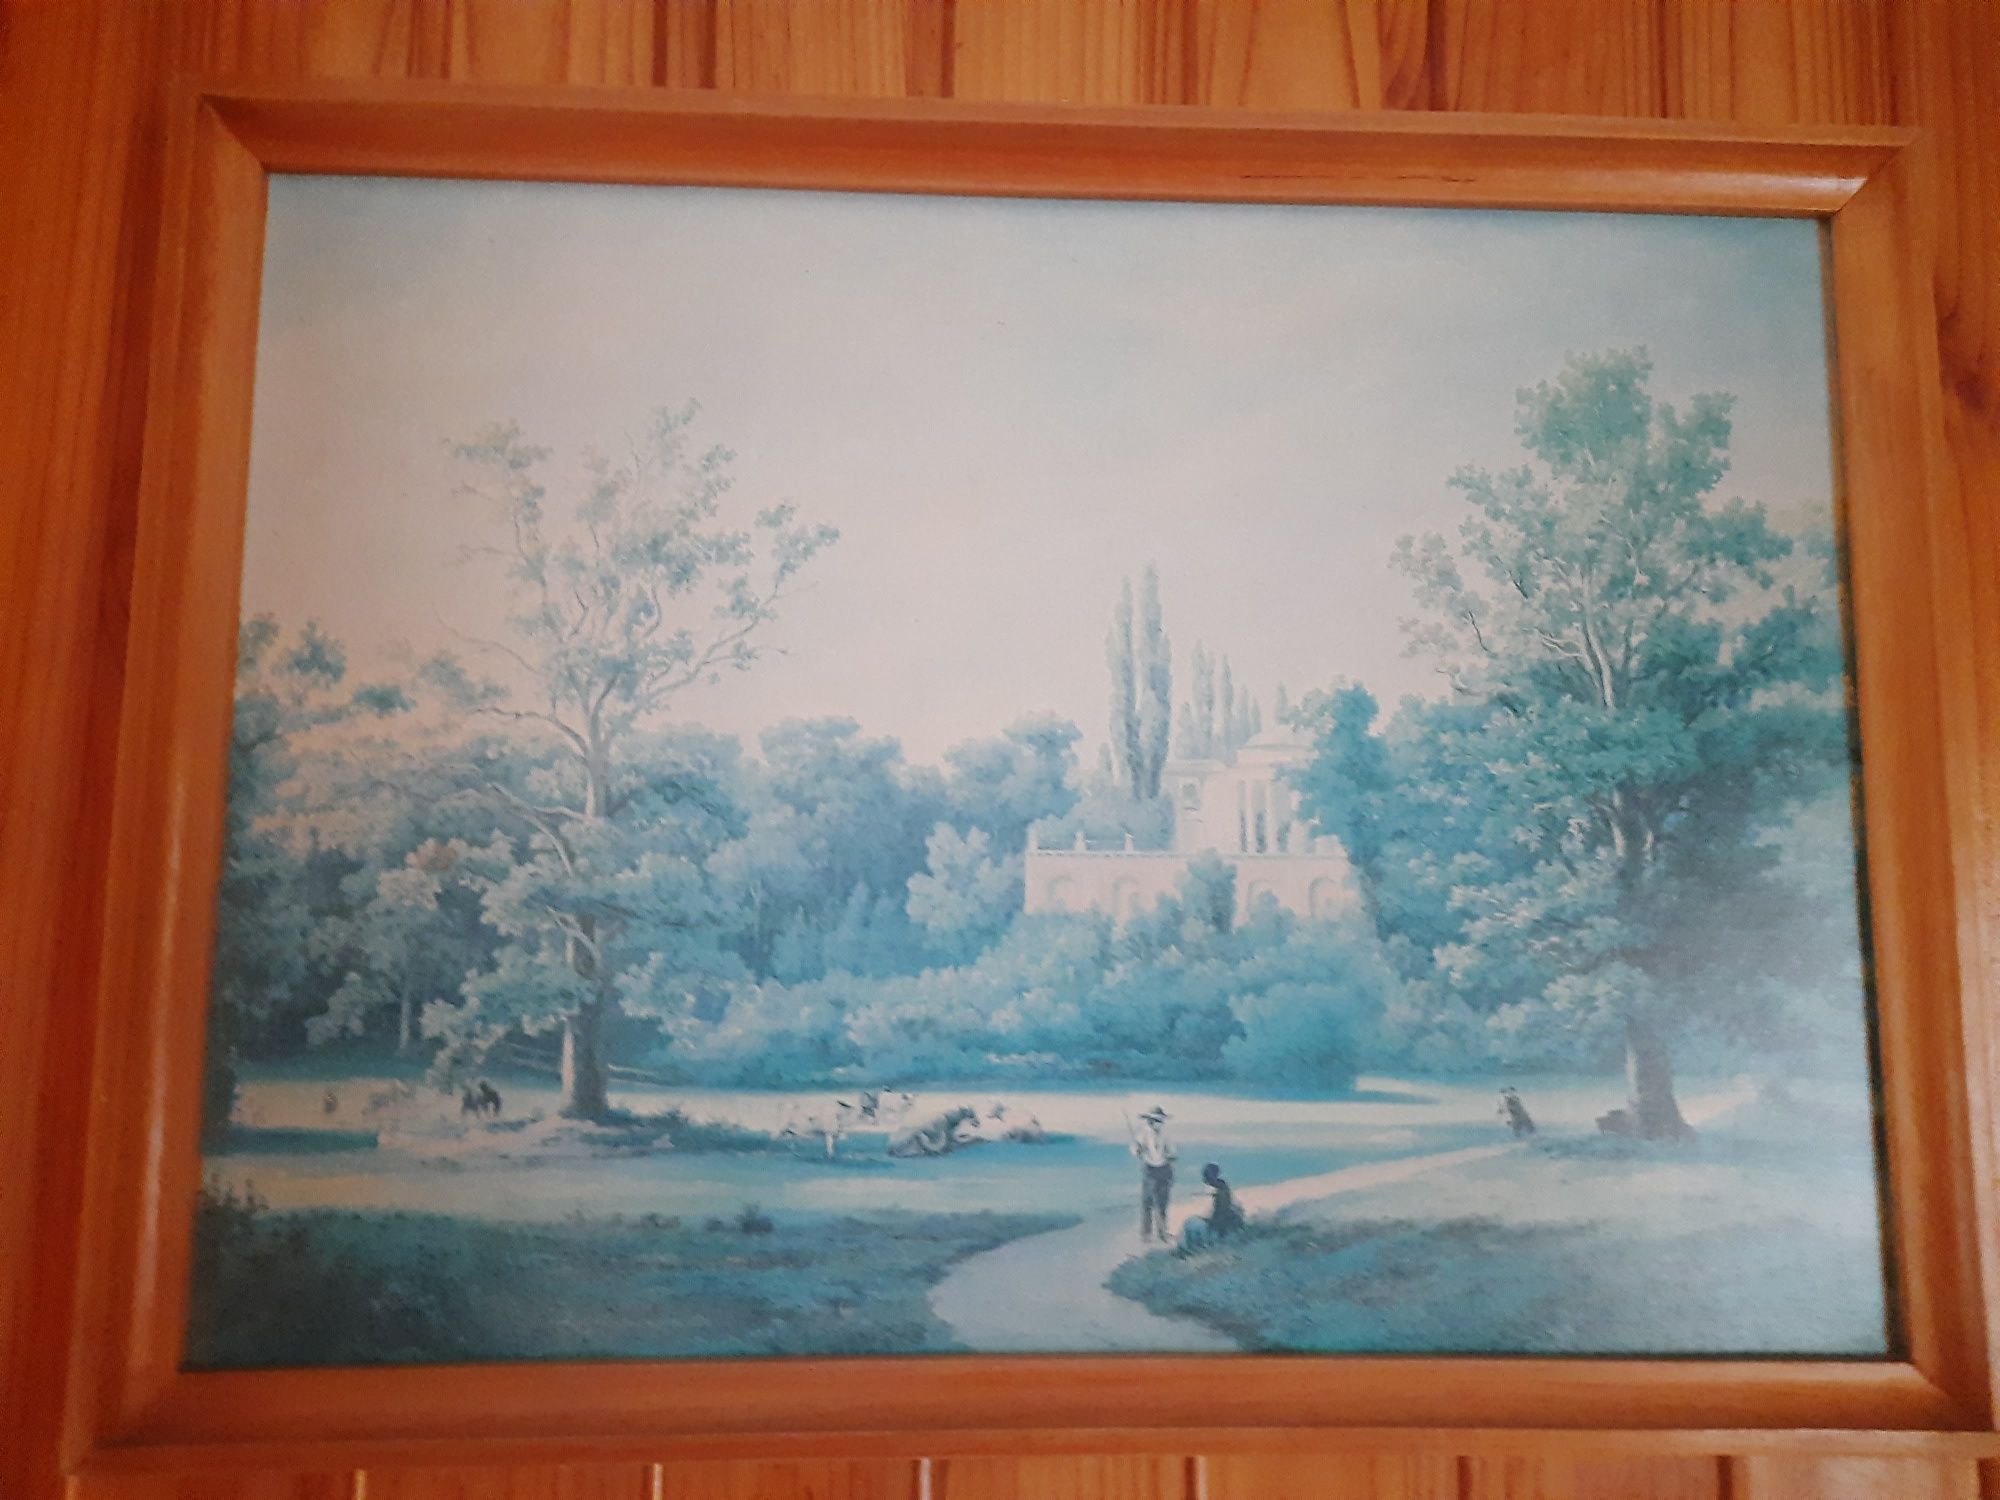 Replika obrazu "Zdjęcie" widok pałacu w Natolinieie